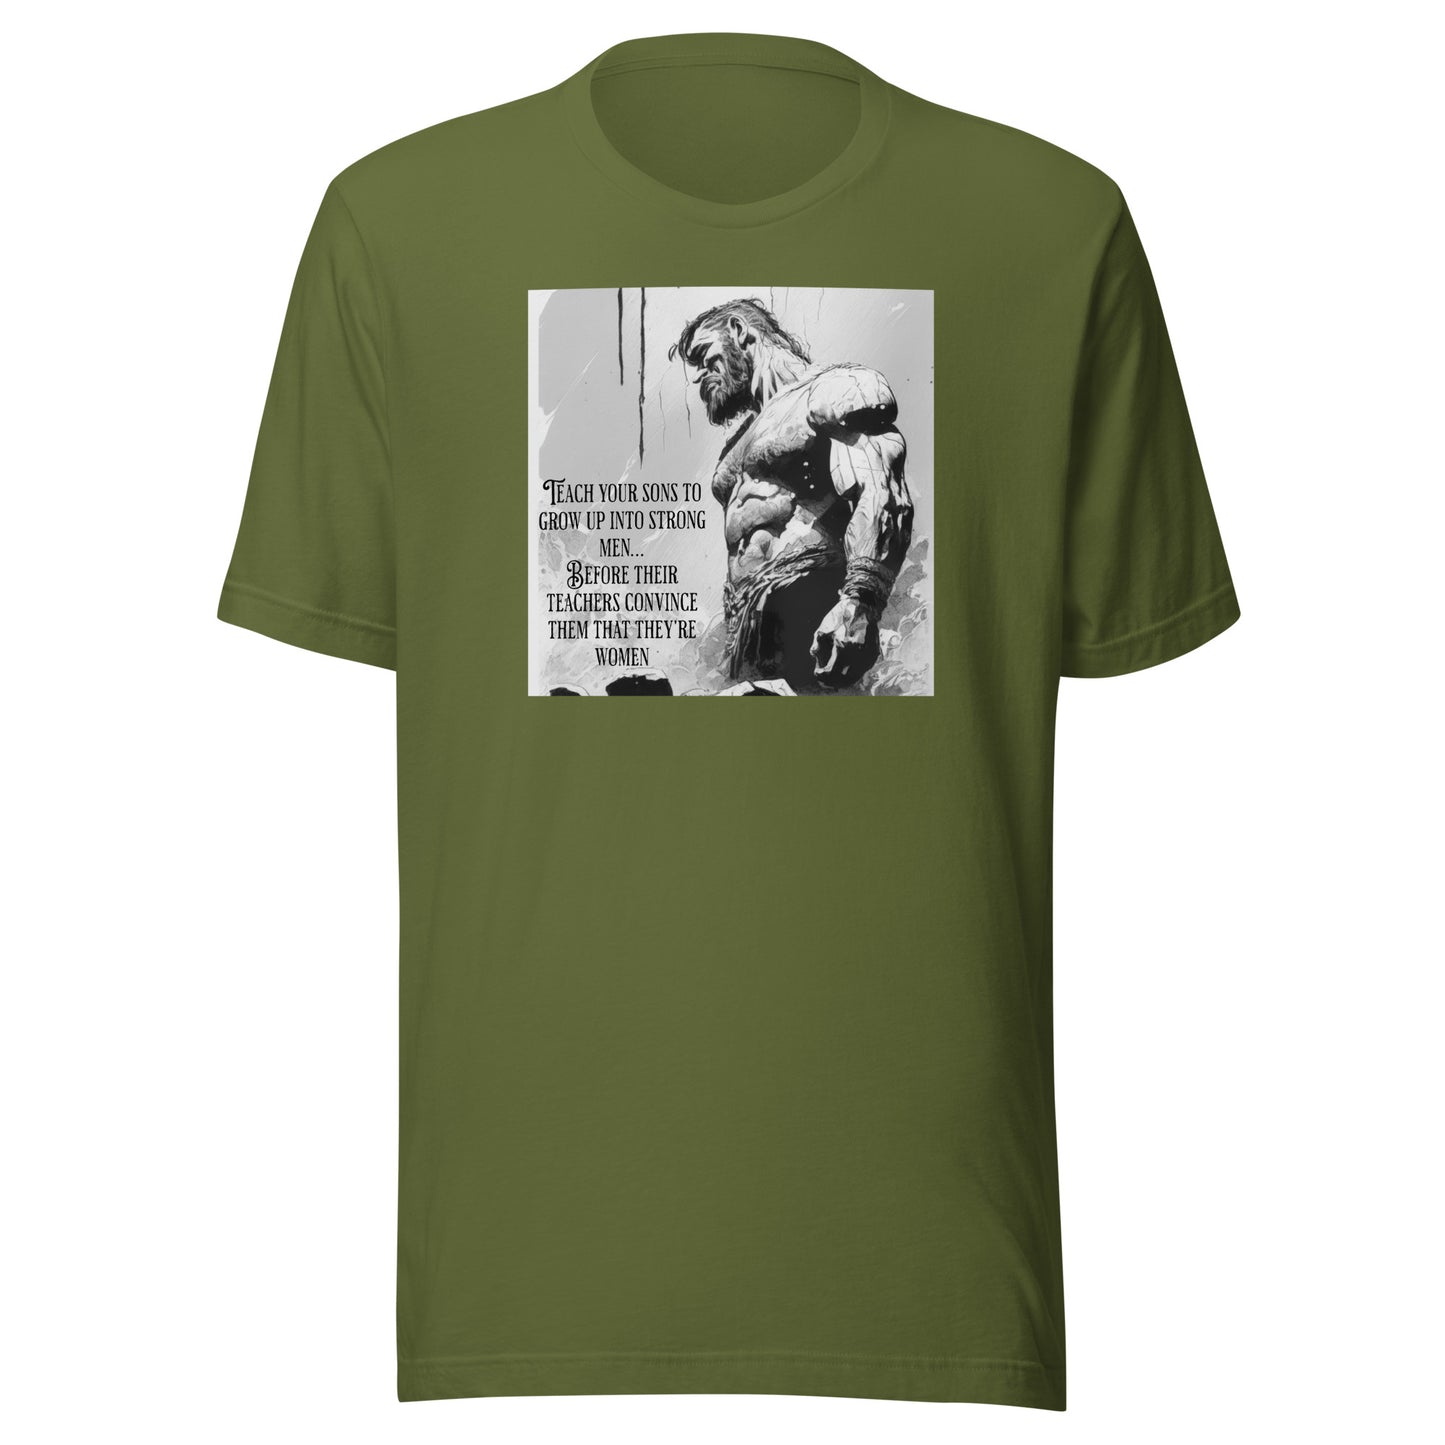 Raise Strong Men Graphic Men's T-Shirt Olive